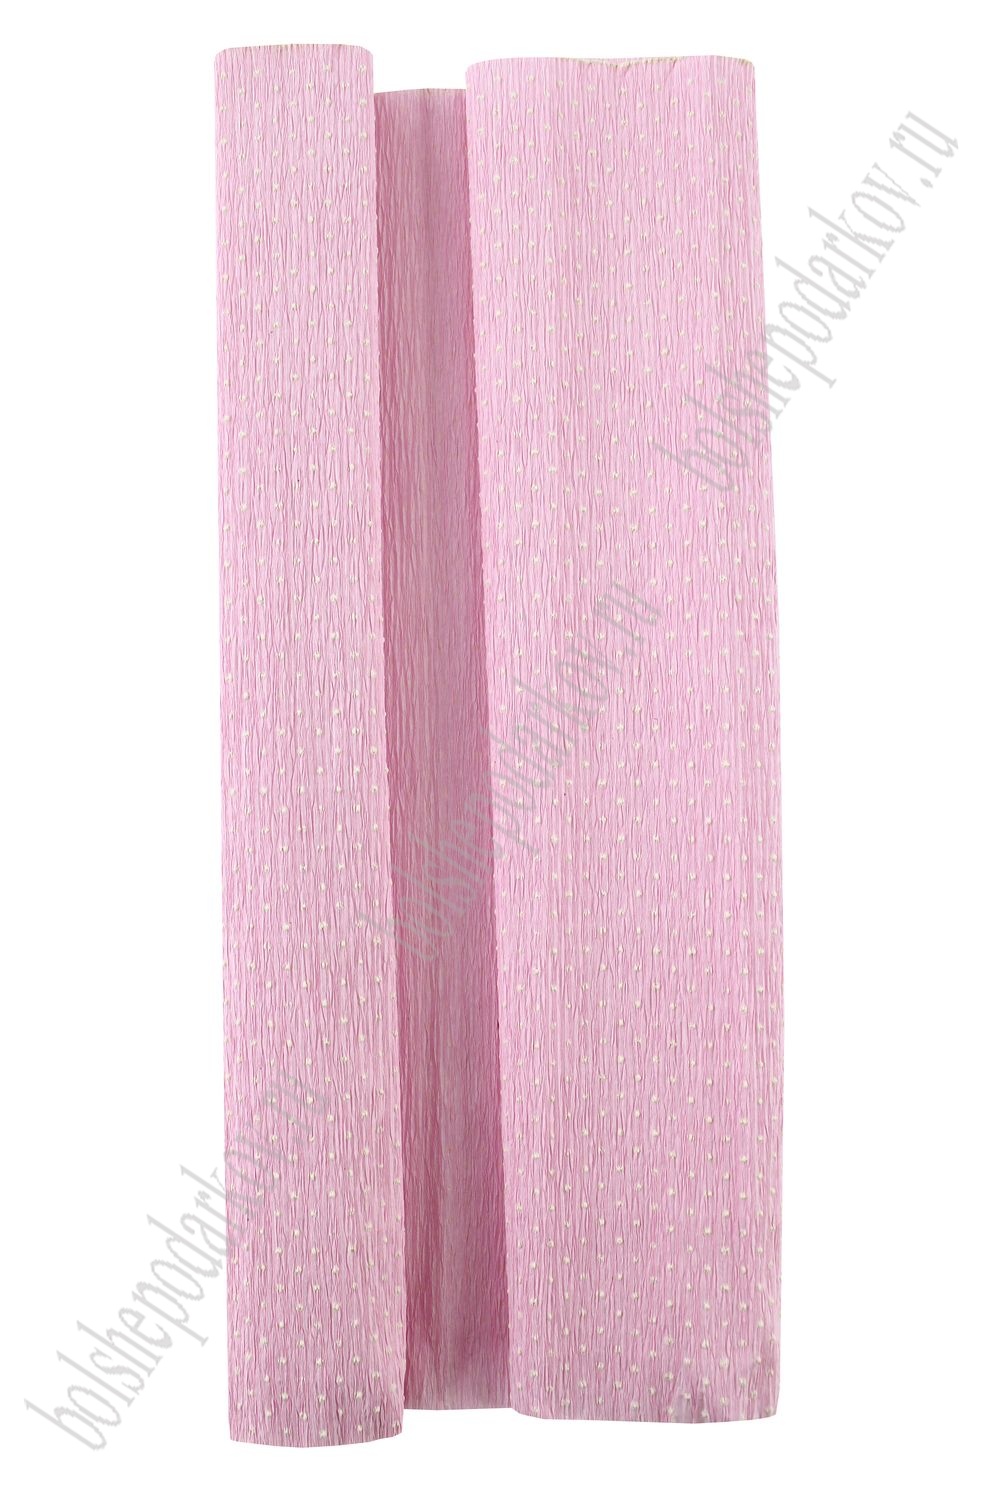 Бумага гофрированная 50 см*2,5 м "Горошек" N68-32, светло-розовый